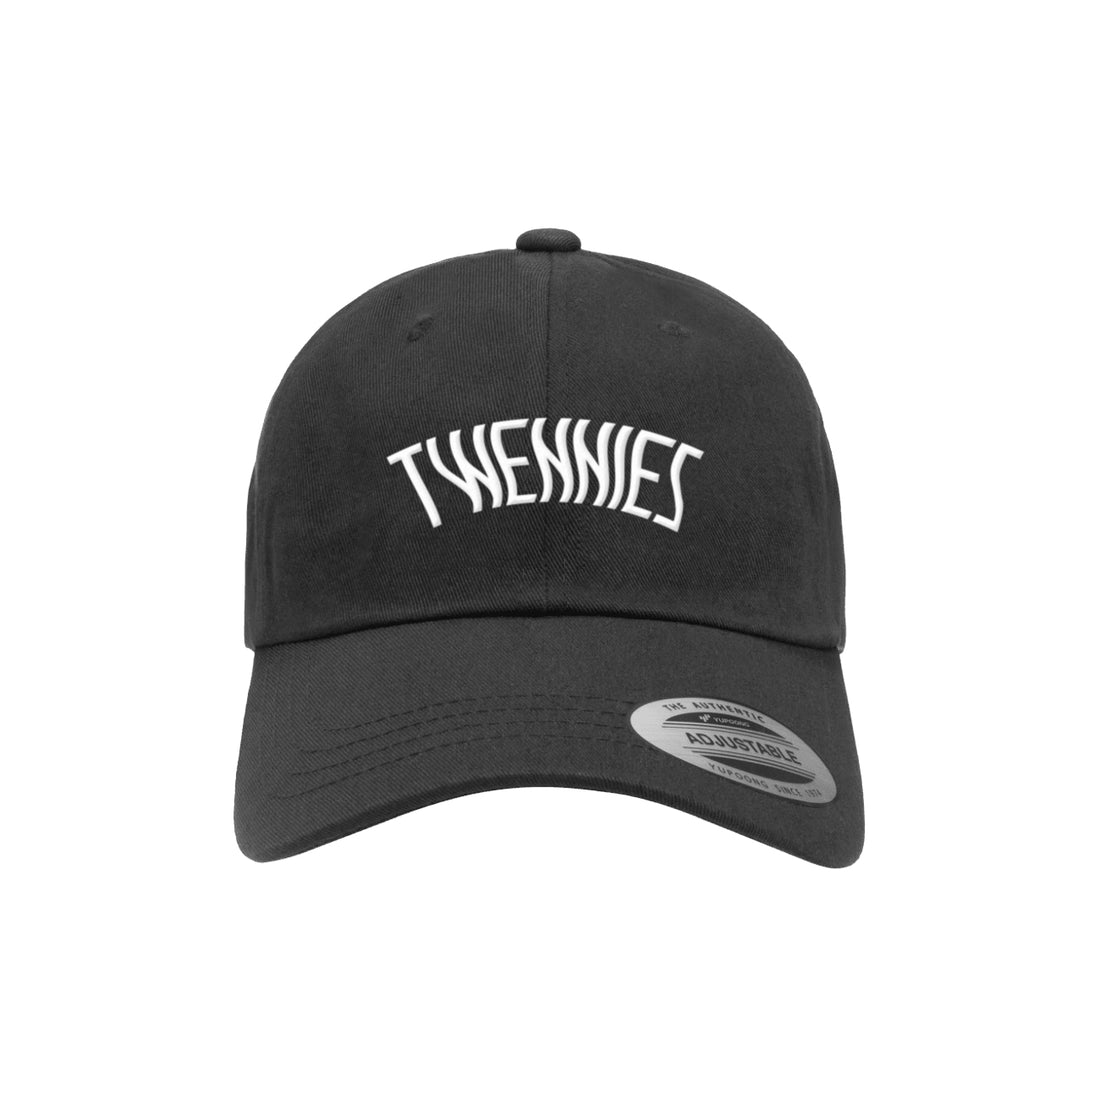 Dragonette - Twennies Black Dad Hat